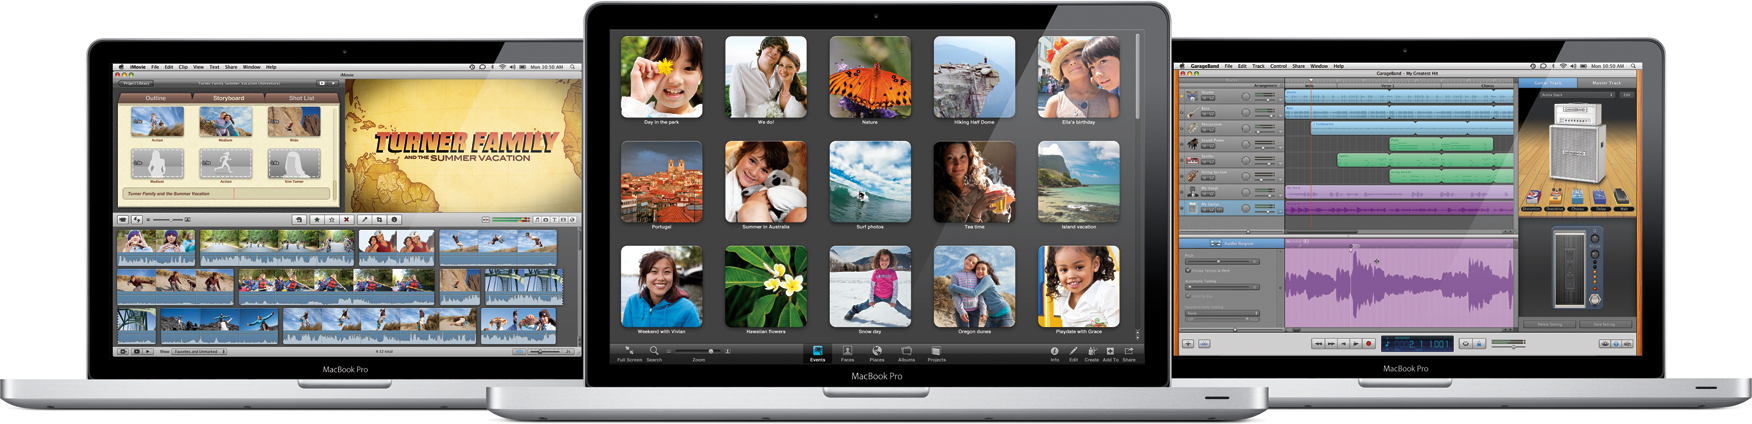 iLife 11 em MacBooks Pro